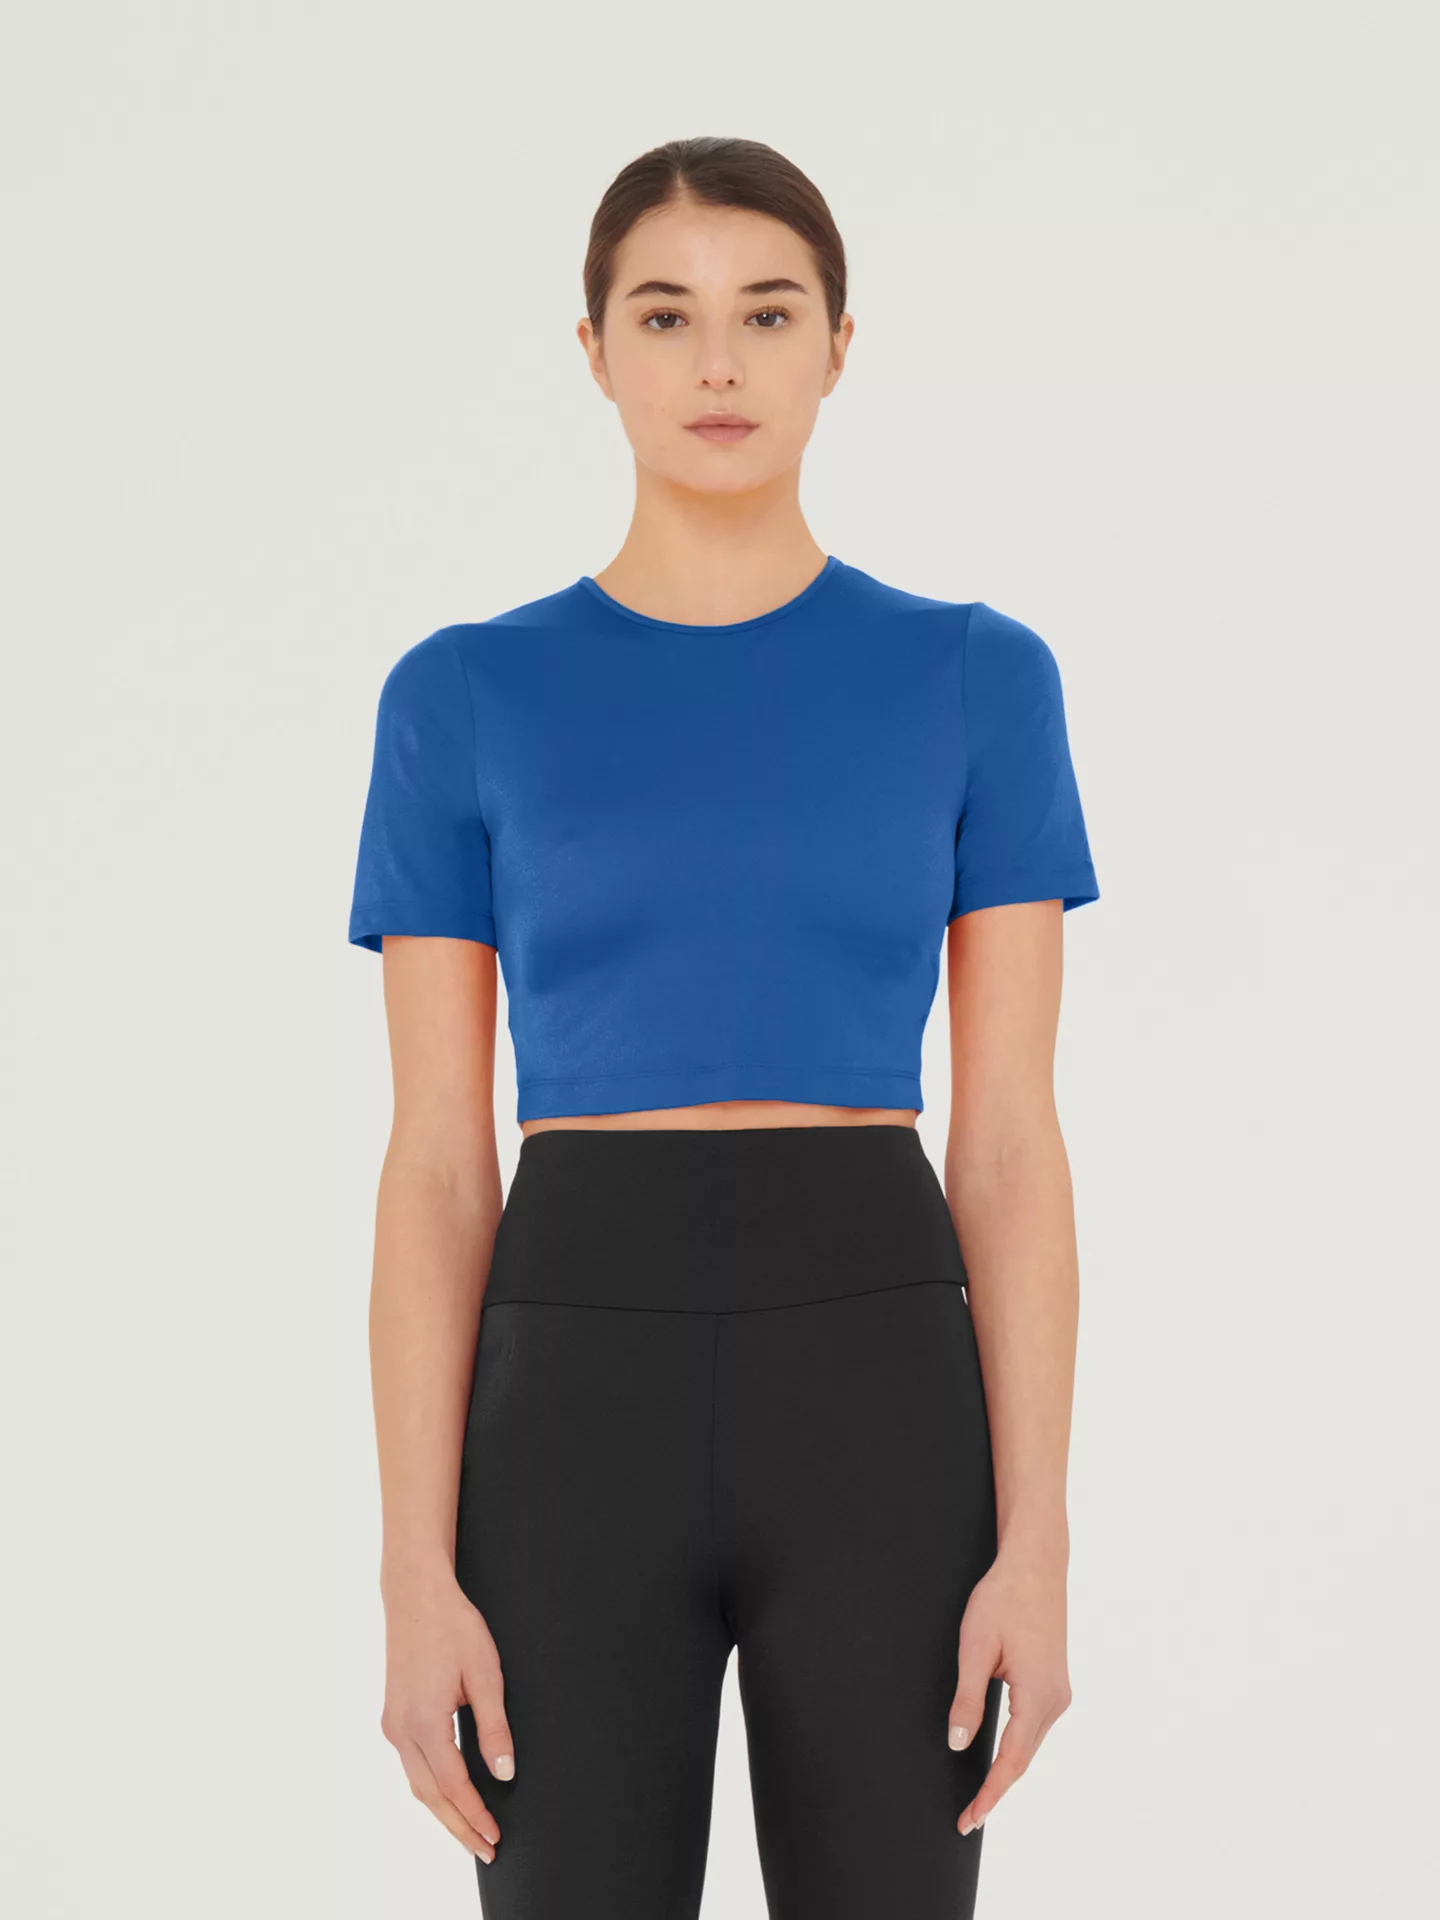 Wolford - The Workout Top Short Sleeves, Frau, sodalite blue, Größe: L günstig online kaufen